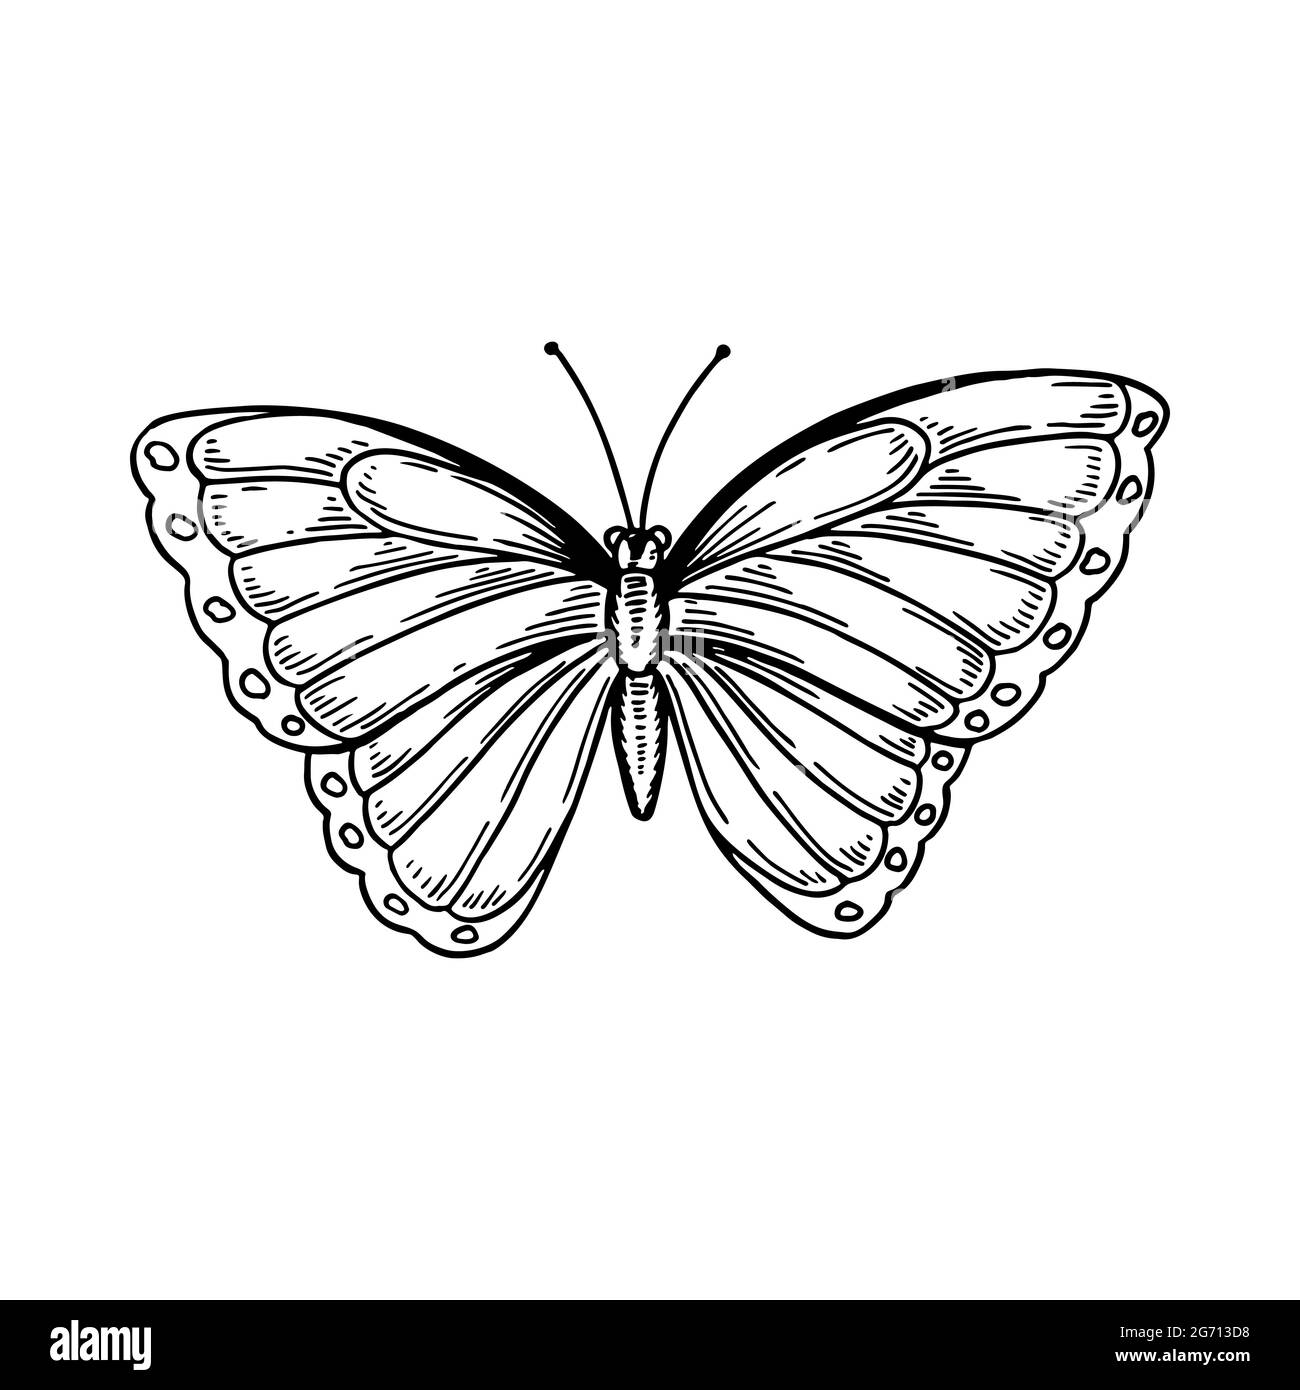 Farfalla Morpho disegnata a mano isolata di bianco. Illustrazione vettoriale nello stile di schizzo Illustrazione Vettoriale